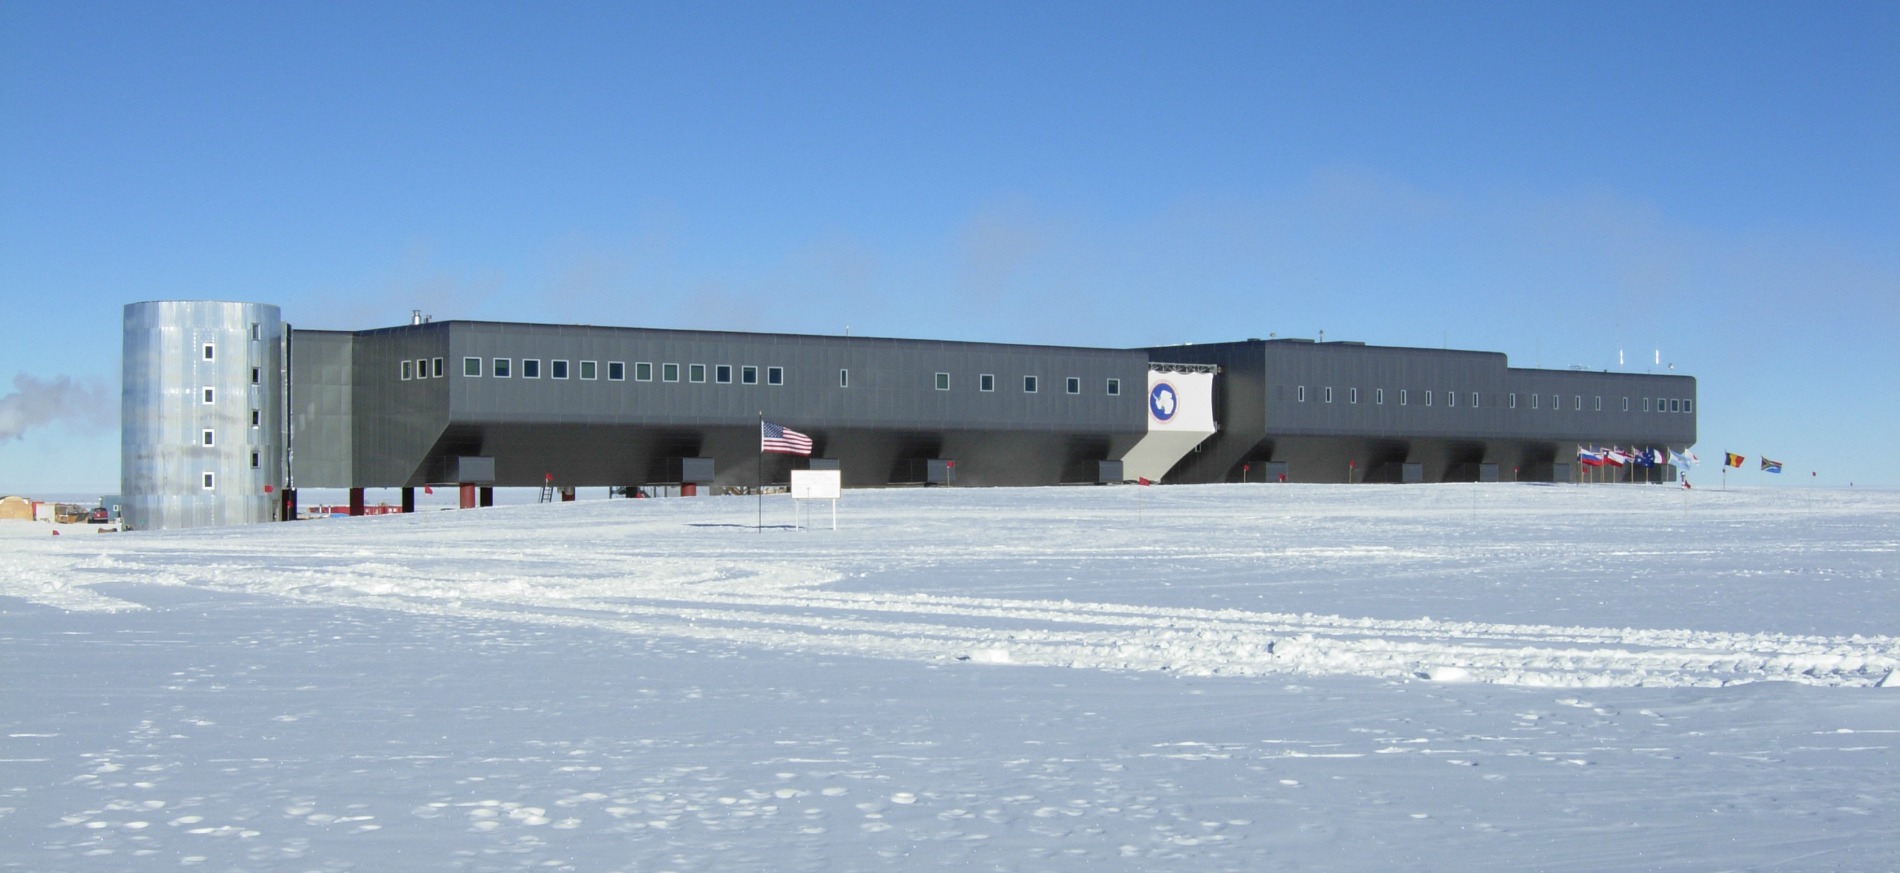 مشهد إجمالي للمحطة وسط الثلوج